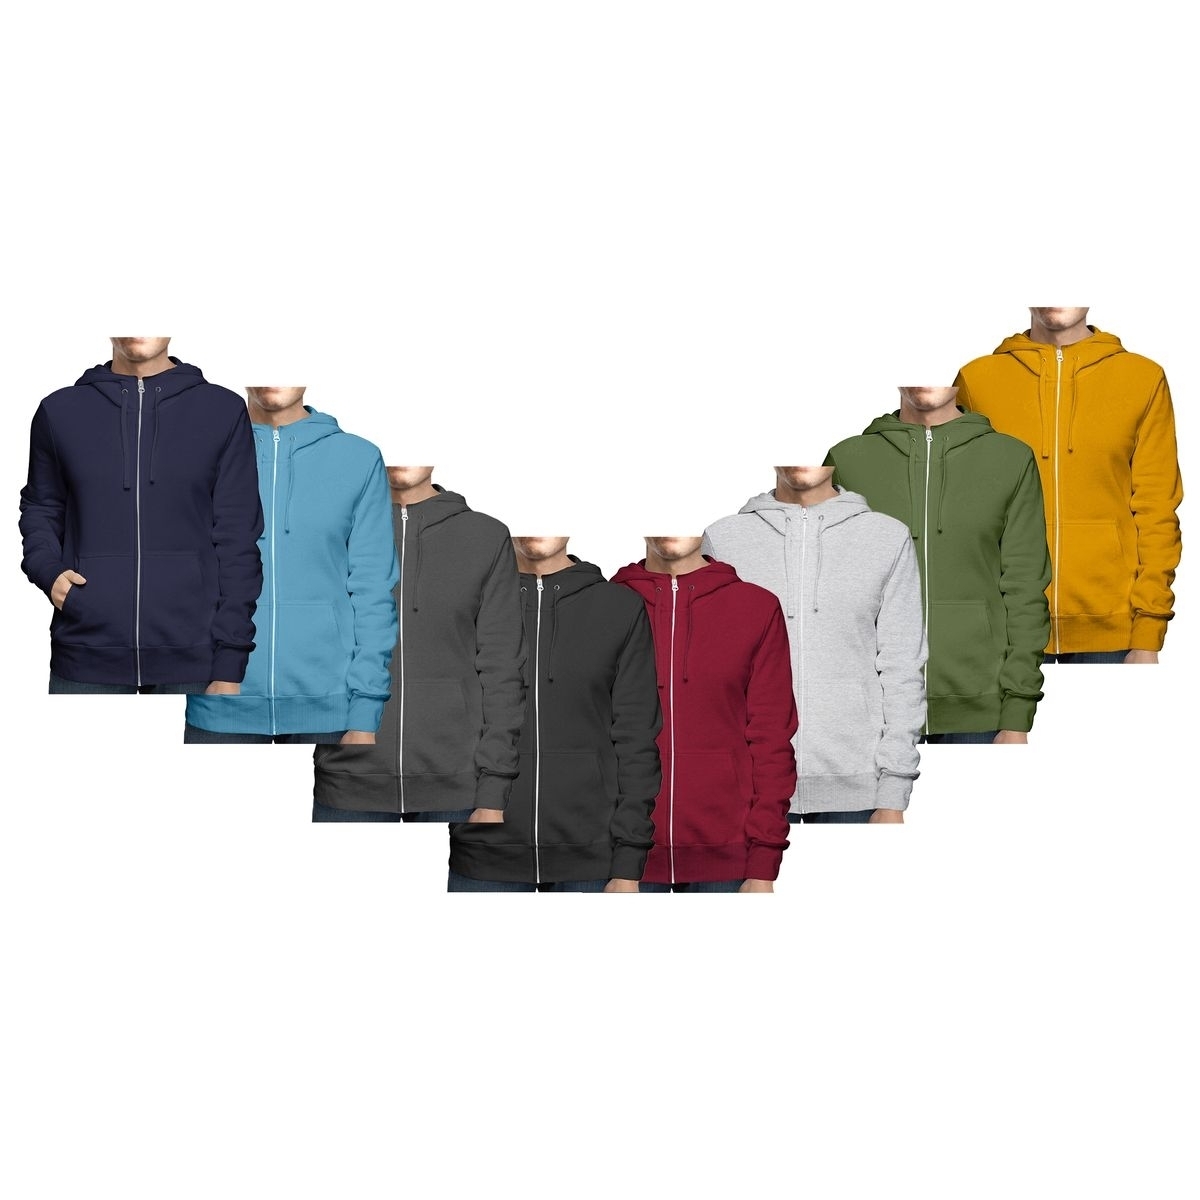 Men's Big & Tall Winter Warm Soft Cozy Full Zip-Up Fleece Lined Hoodie Sweatshirt - Navy, Small